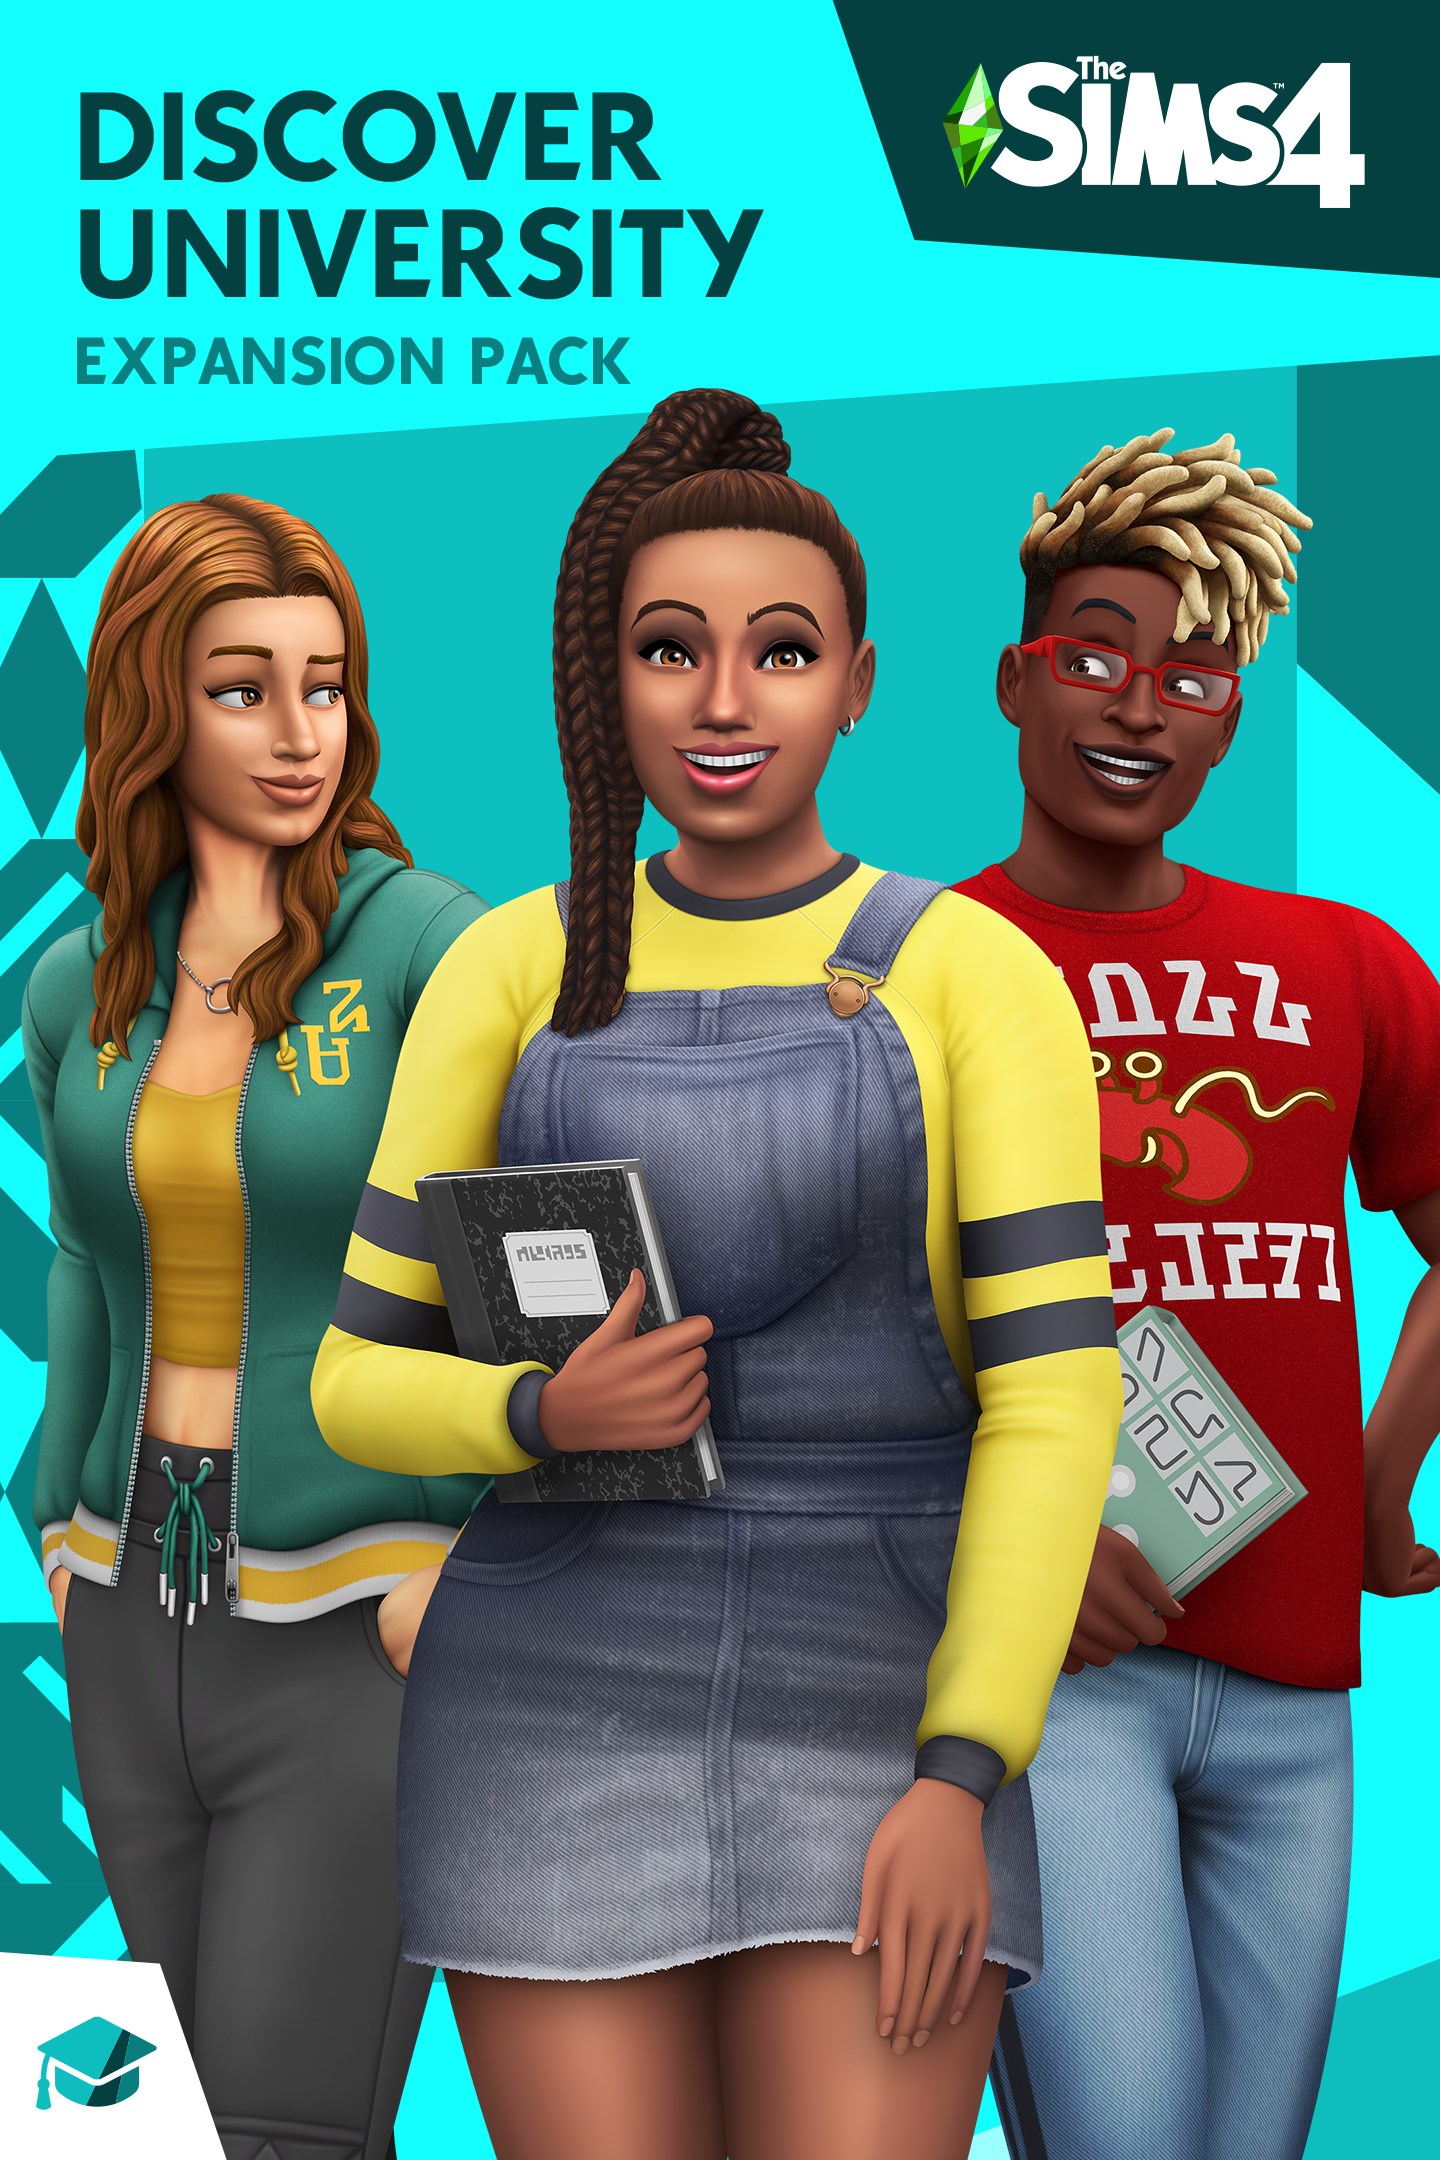 Klassen är i session med The Sims 4 Discover University